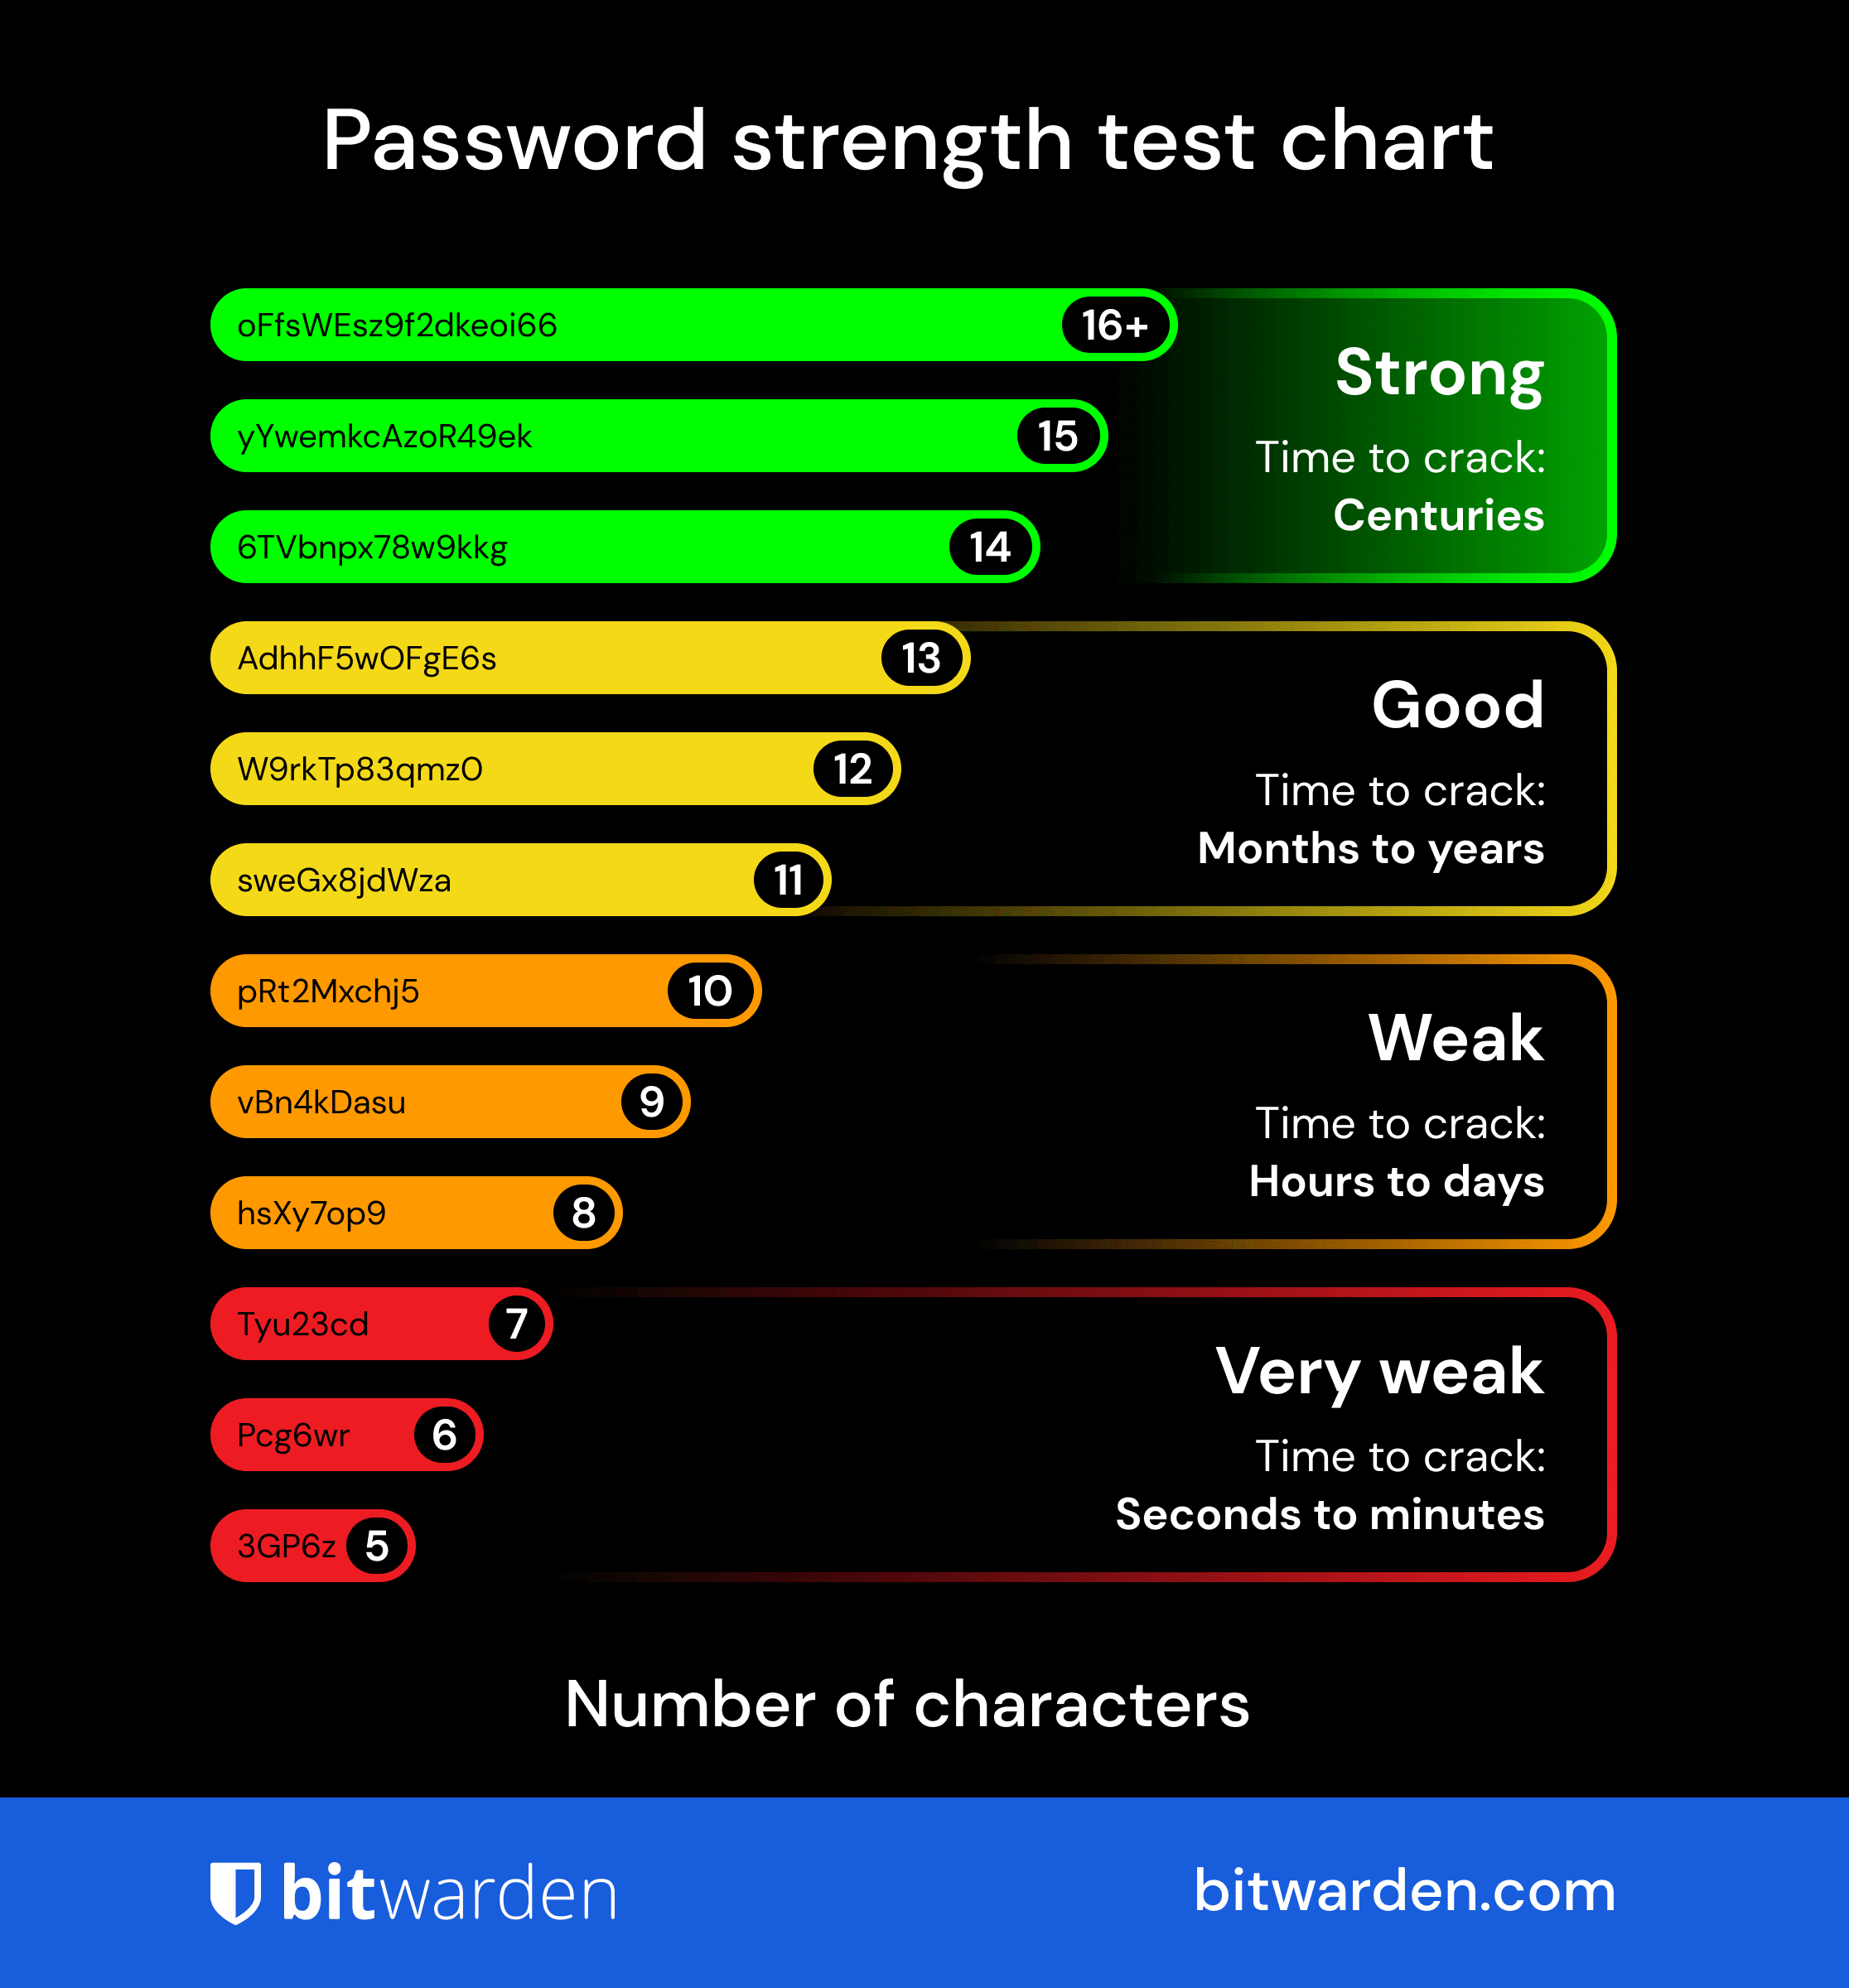 Diagramm zur Überprüfung der Passwortstärke - Speichern Sie die Passwortstärke-Test-Tabelle, um Ihre nächsten Passwort-Entscheidungen zu unterstützen. Bitwarden verwendet das Tool zxcvbn für zuverlässige Berechnungen der Passwortstärke.